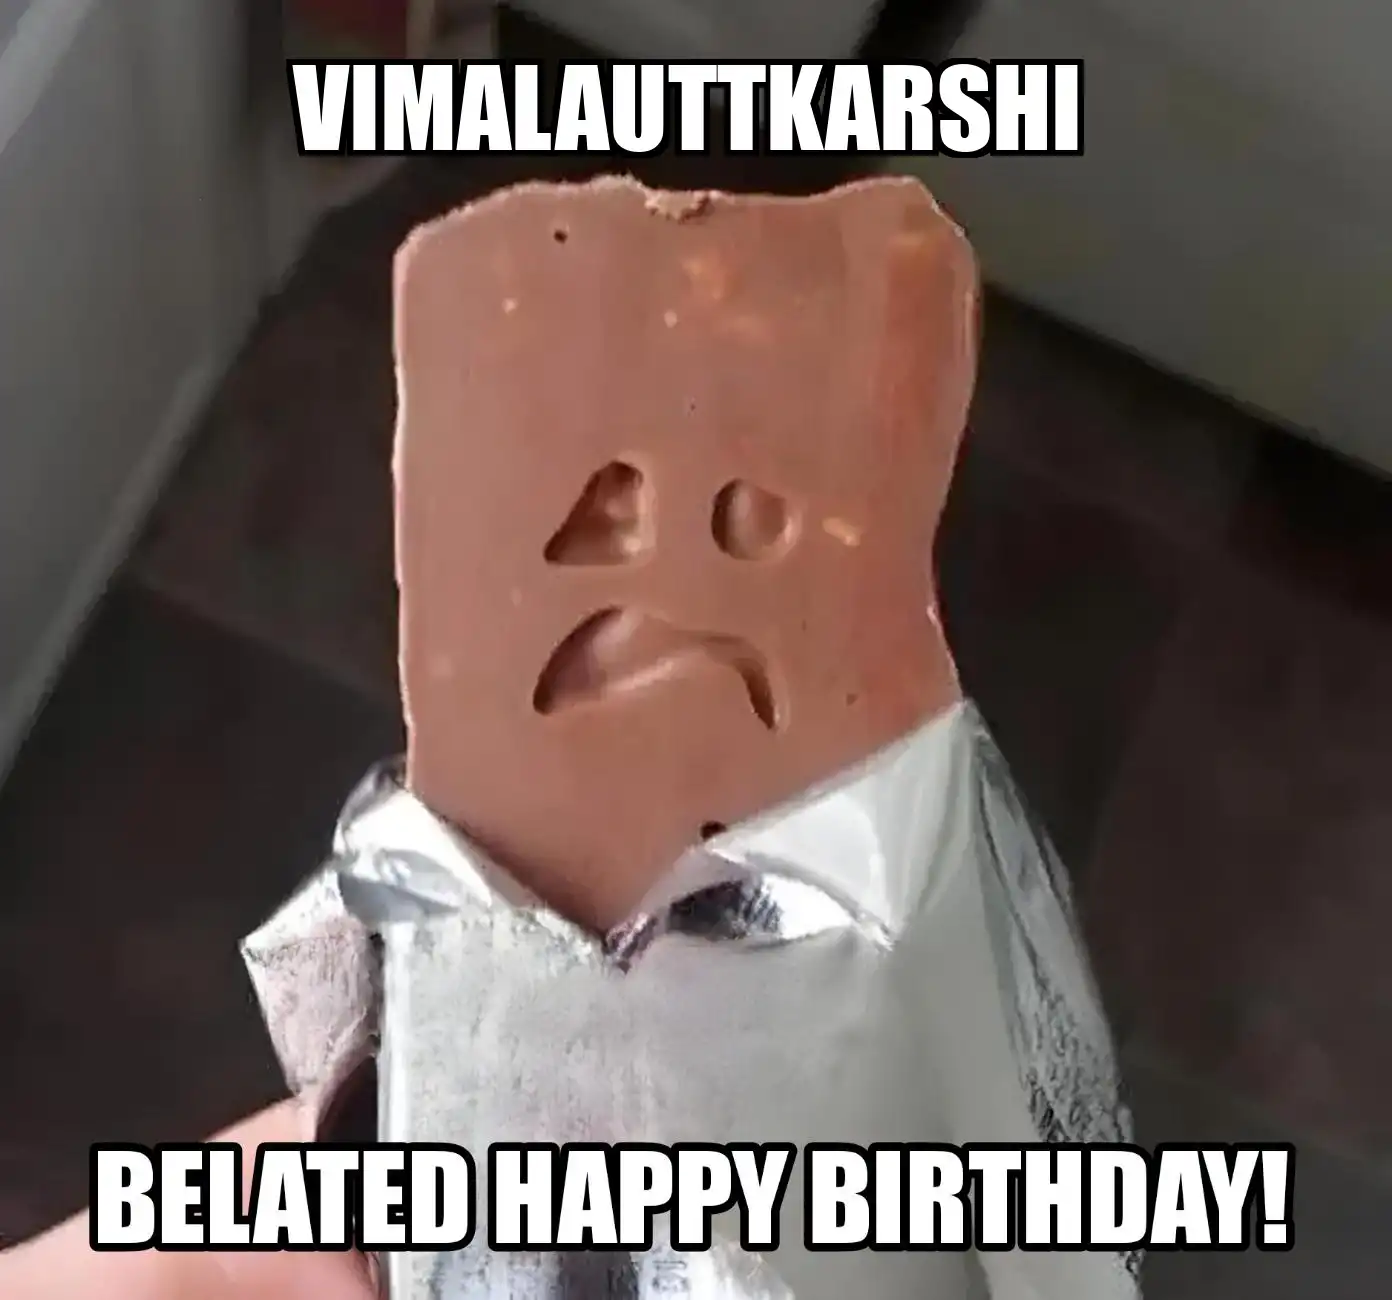 Happy Birthday Vimalauttkarshi Belated Happy Birthday Meme